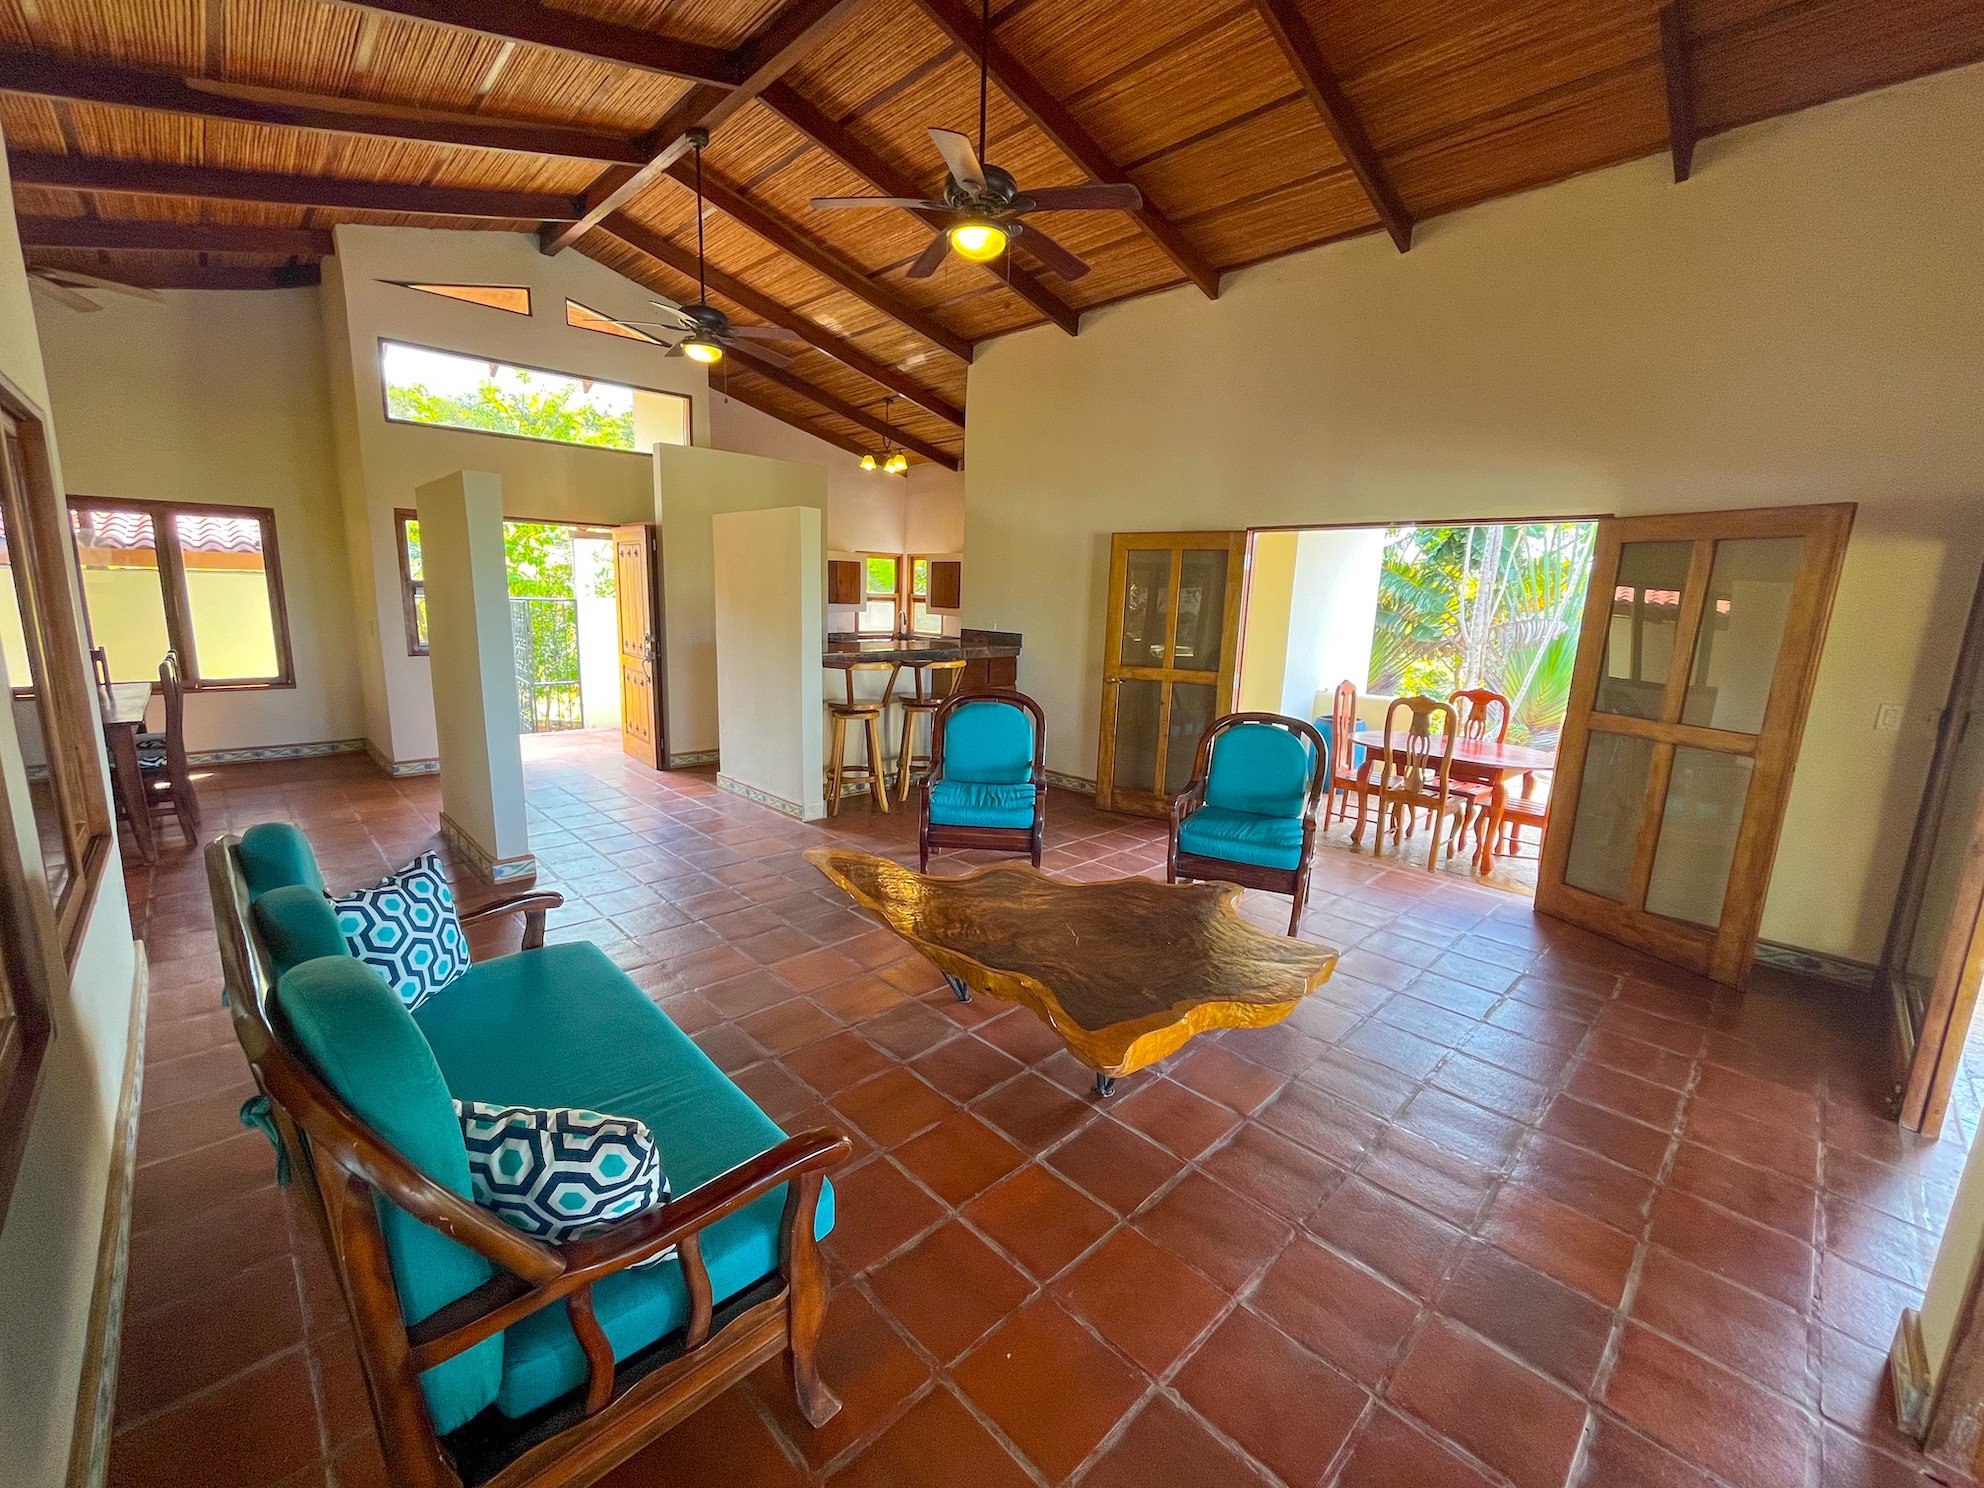 Large Home For Sale San Juan Del Sur Property Real Estate Nicaragua 2023 20.JPEG